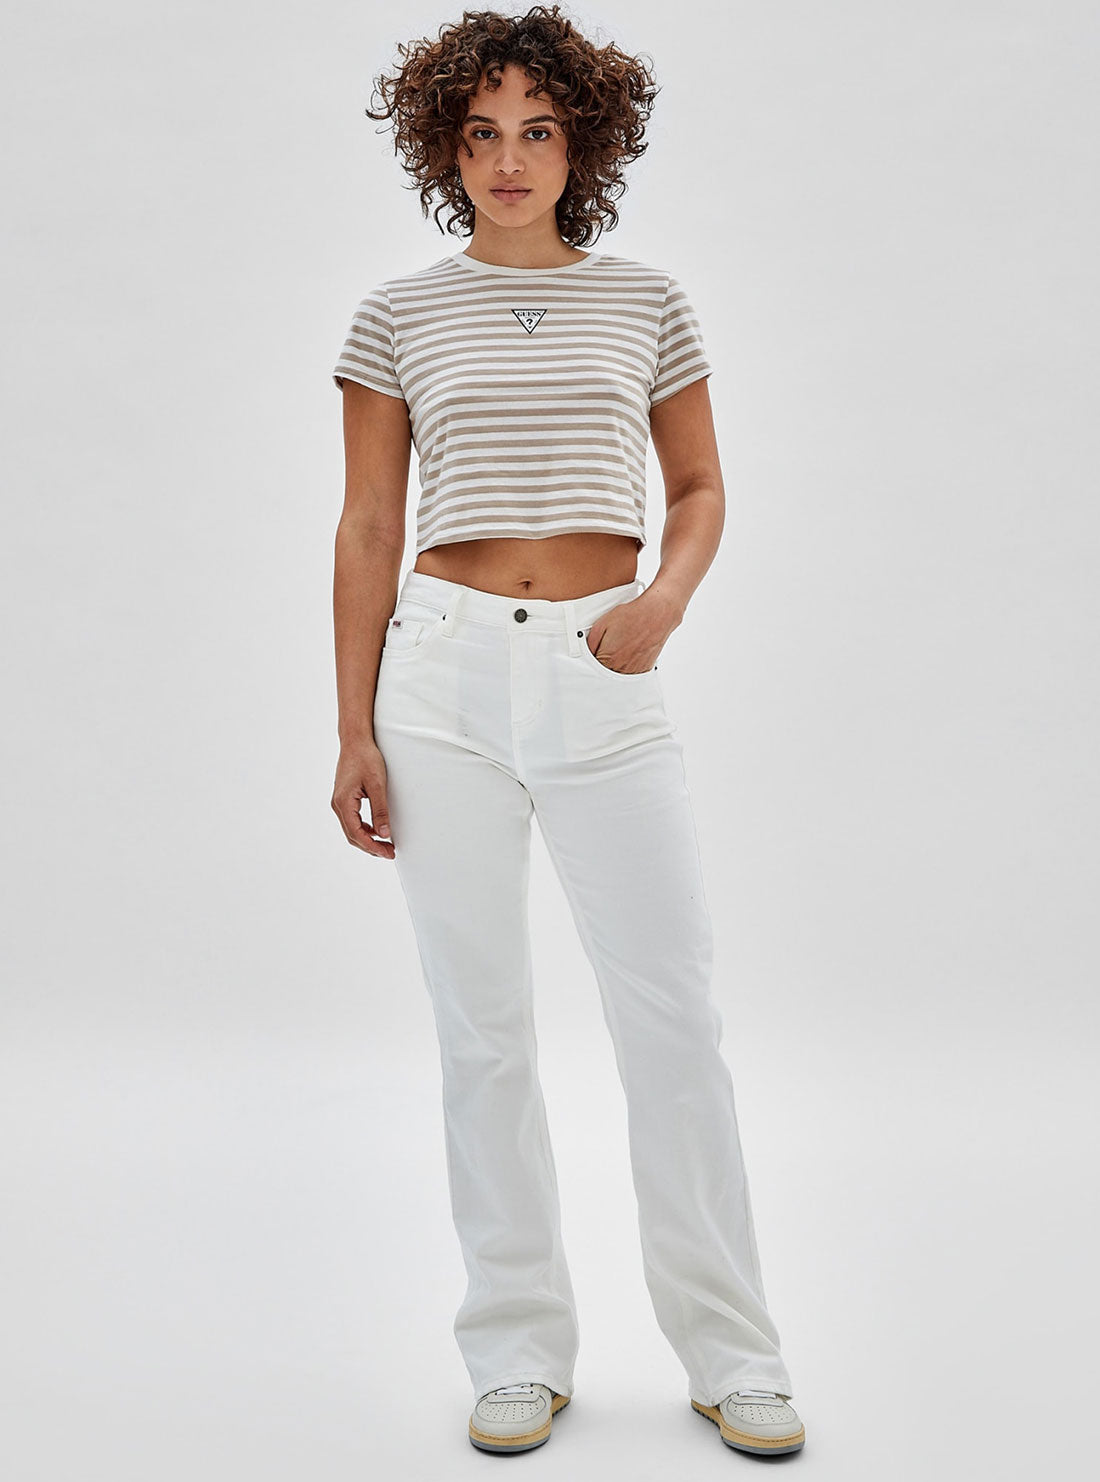 GUESS Women's Guess Originals White Multi Clara Striped Baby T-Shirt W3GI60KA0Q3 Full View